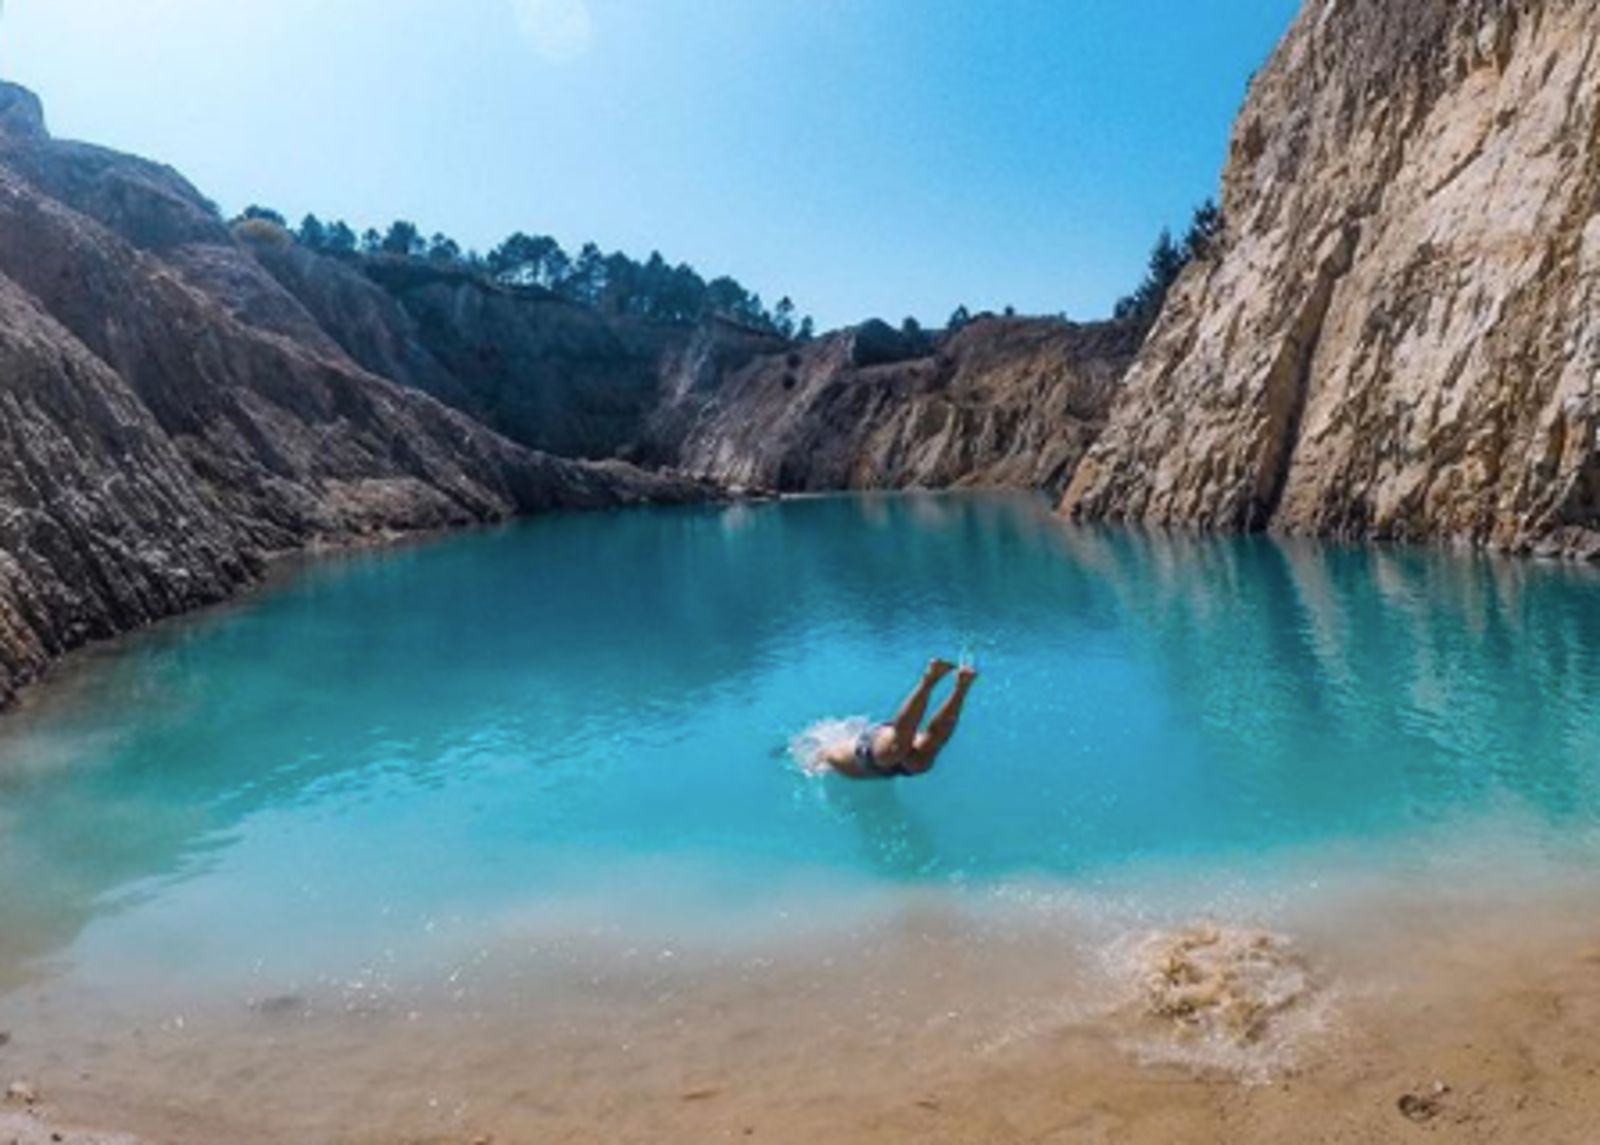 El lago tóxico español donde se ha puesto de moda bañarse y sacarlo en Instagram